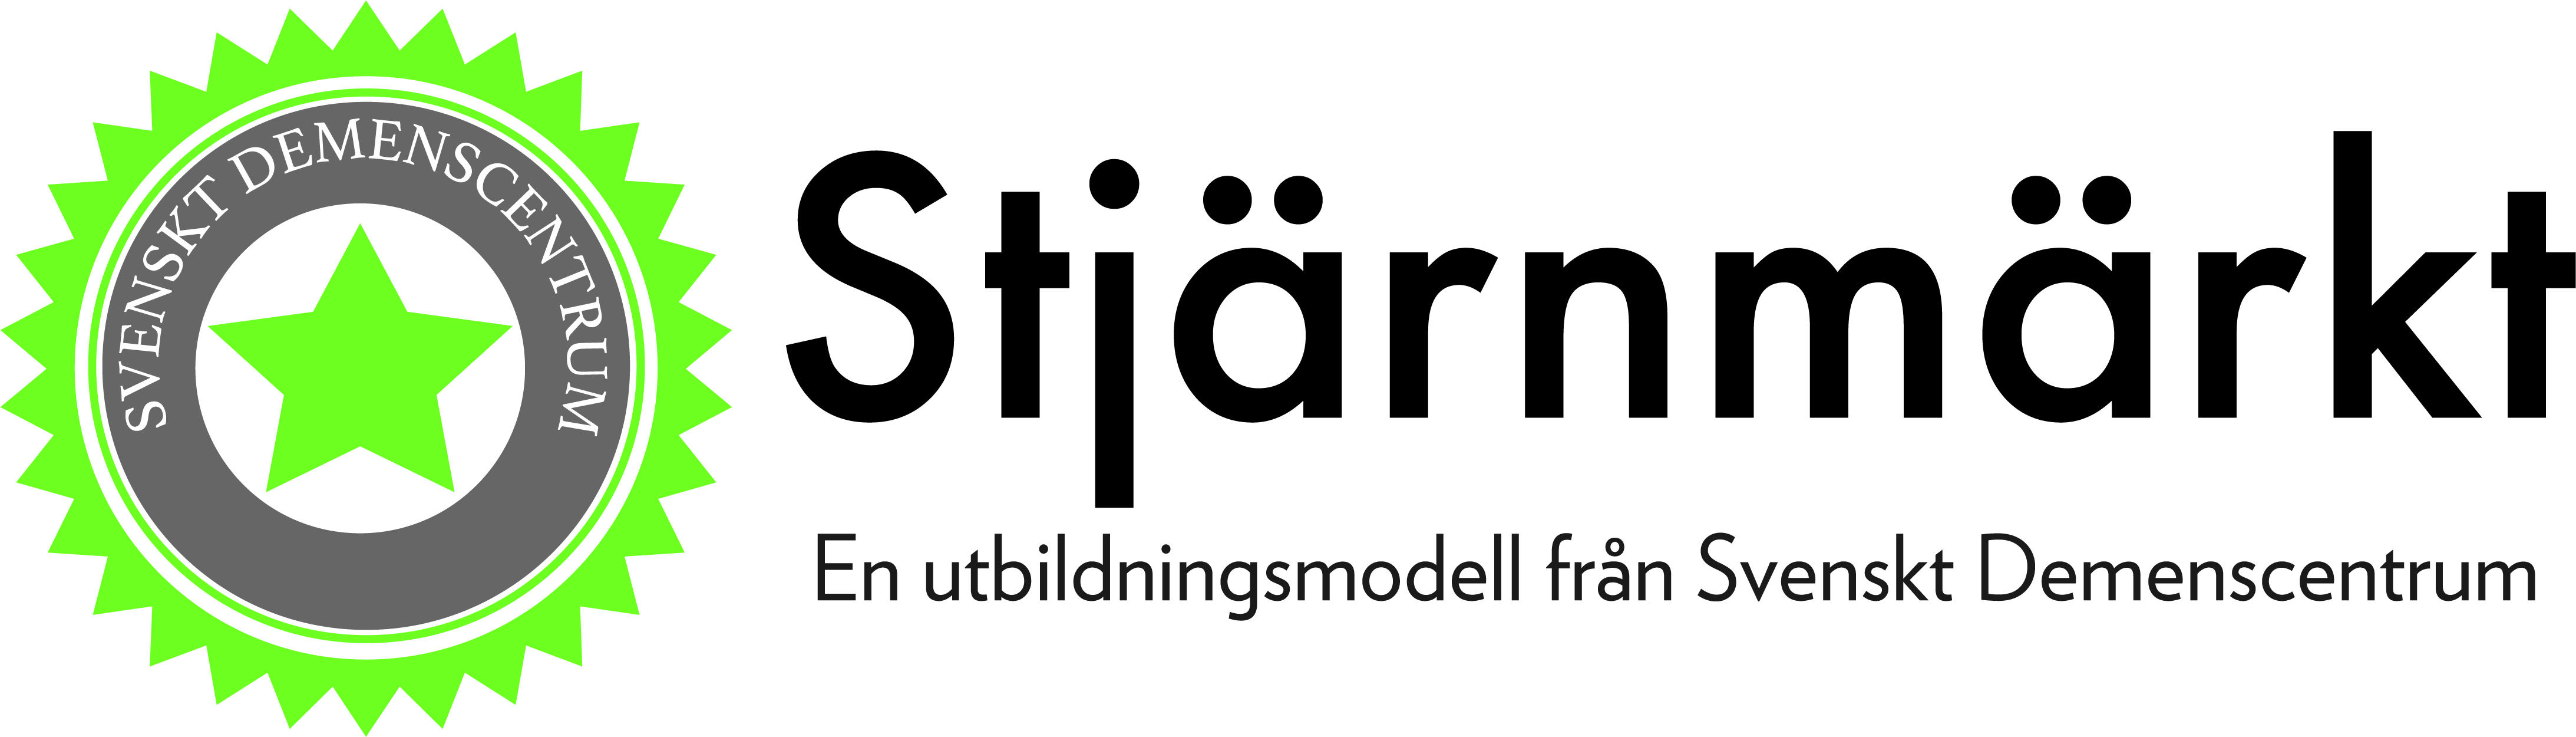 Logotypen för utbildningsmodellen Stjärnmärkt, som Svenskt Demenscentrum står bakom